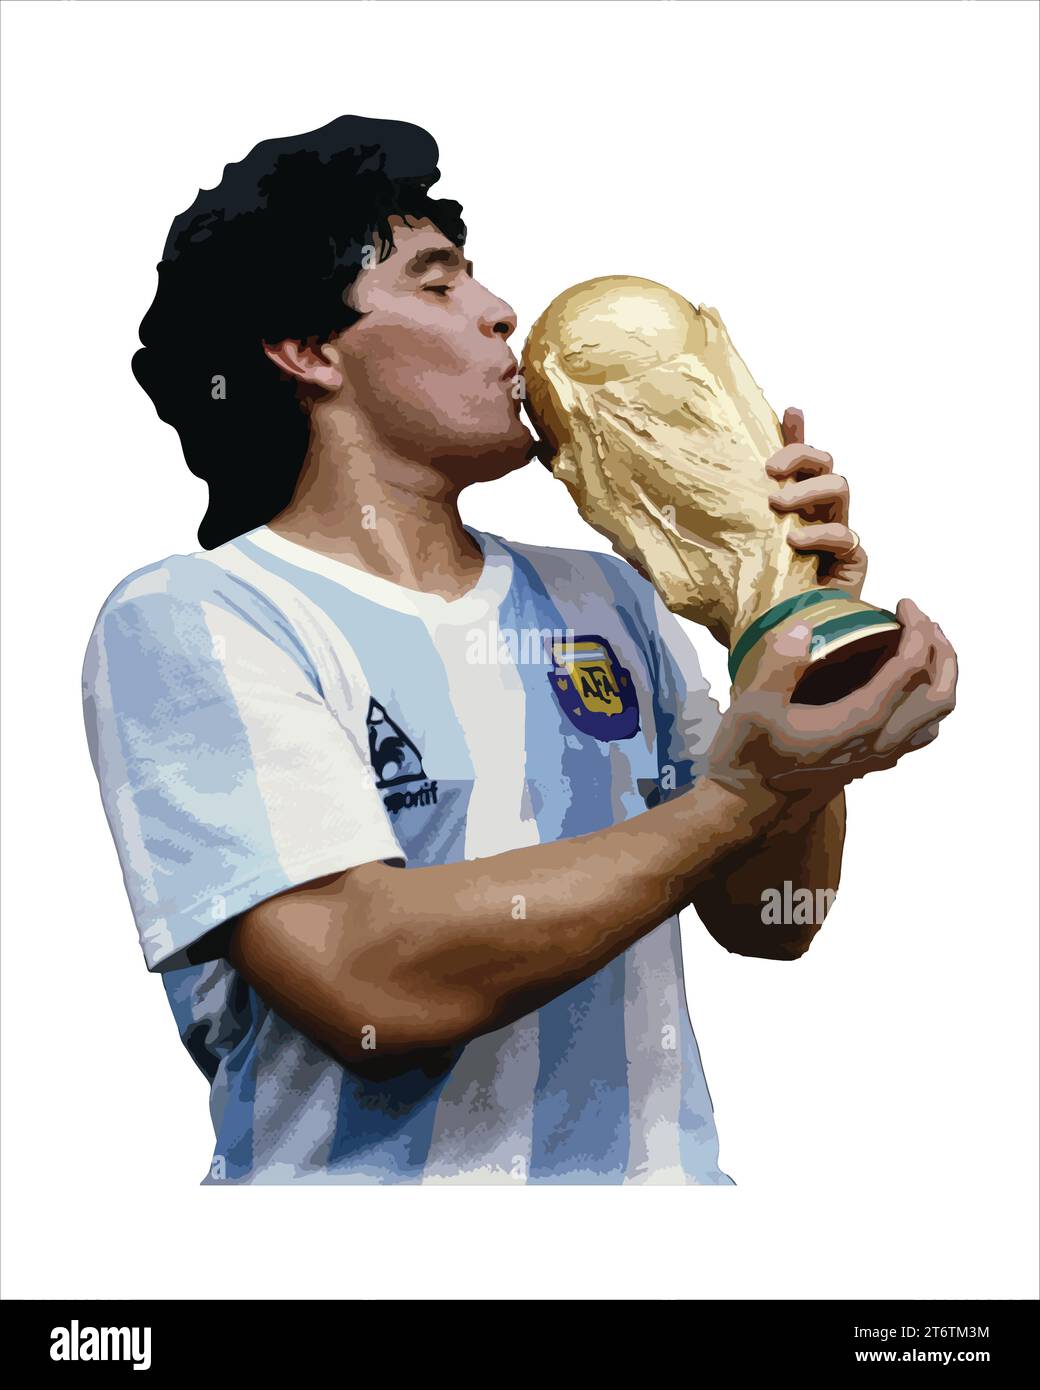 Diego Maradona Kissing Football Trophy, coppa del mondo finale momento giocatore di calcio argentino Vector Illustration image Illustrazione Vettoriale